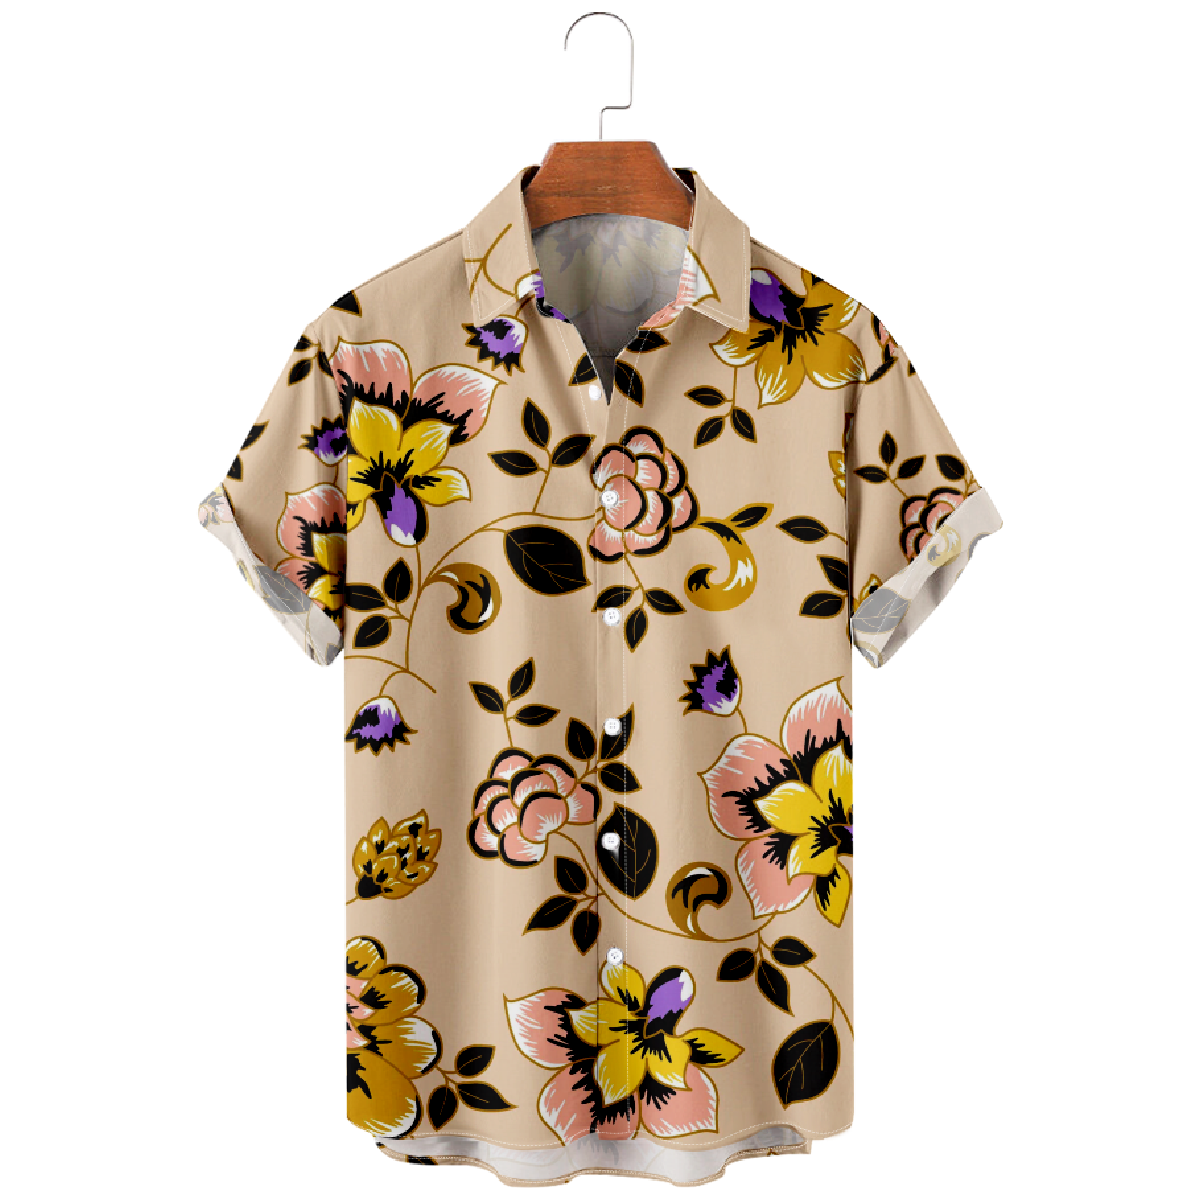 Mens Floral Button-Up Shirt Summer Casual Short Sleeve Shirt Straight Collar Regular Fit